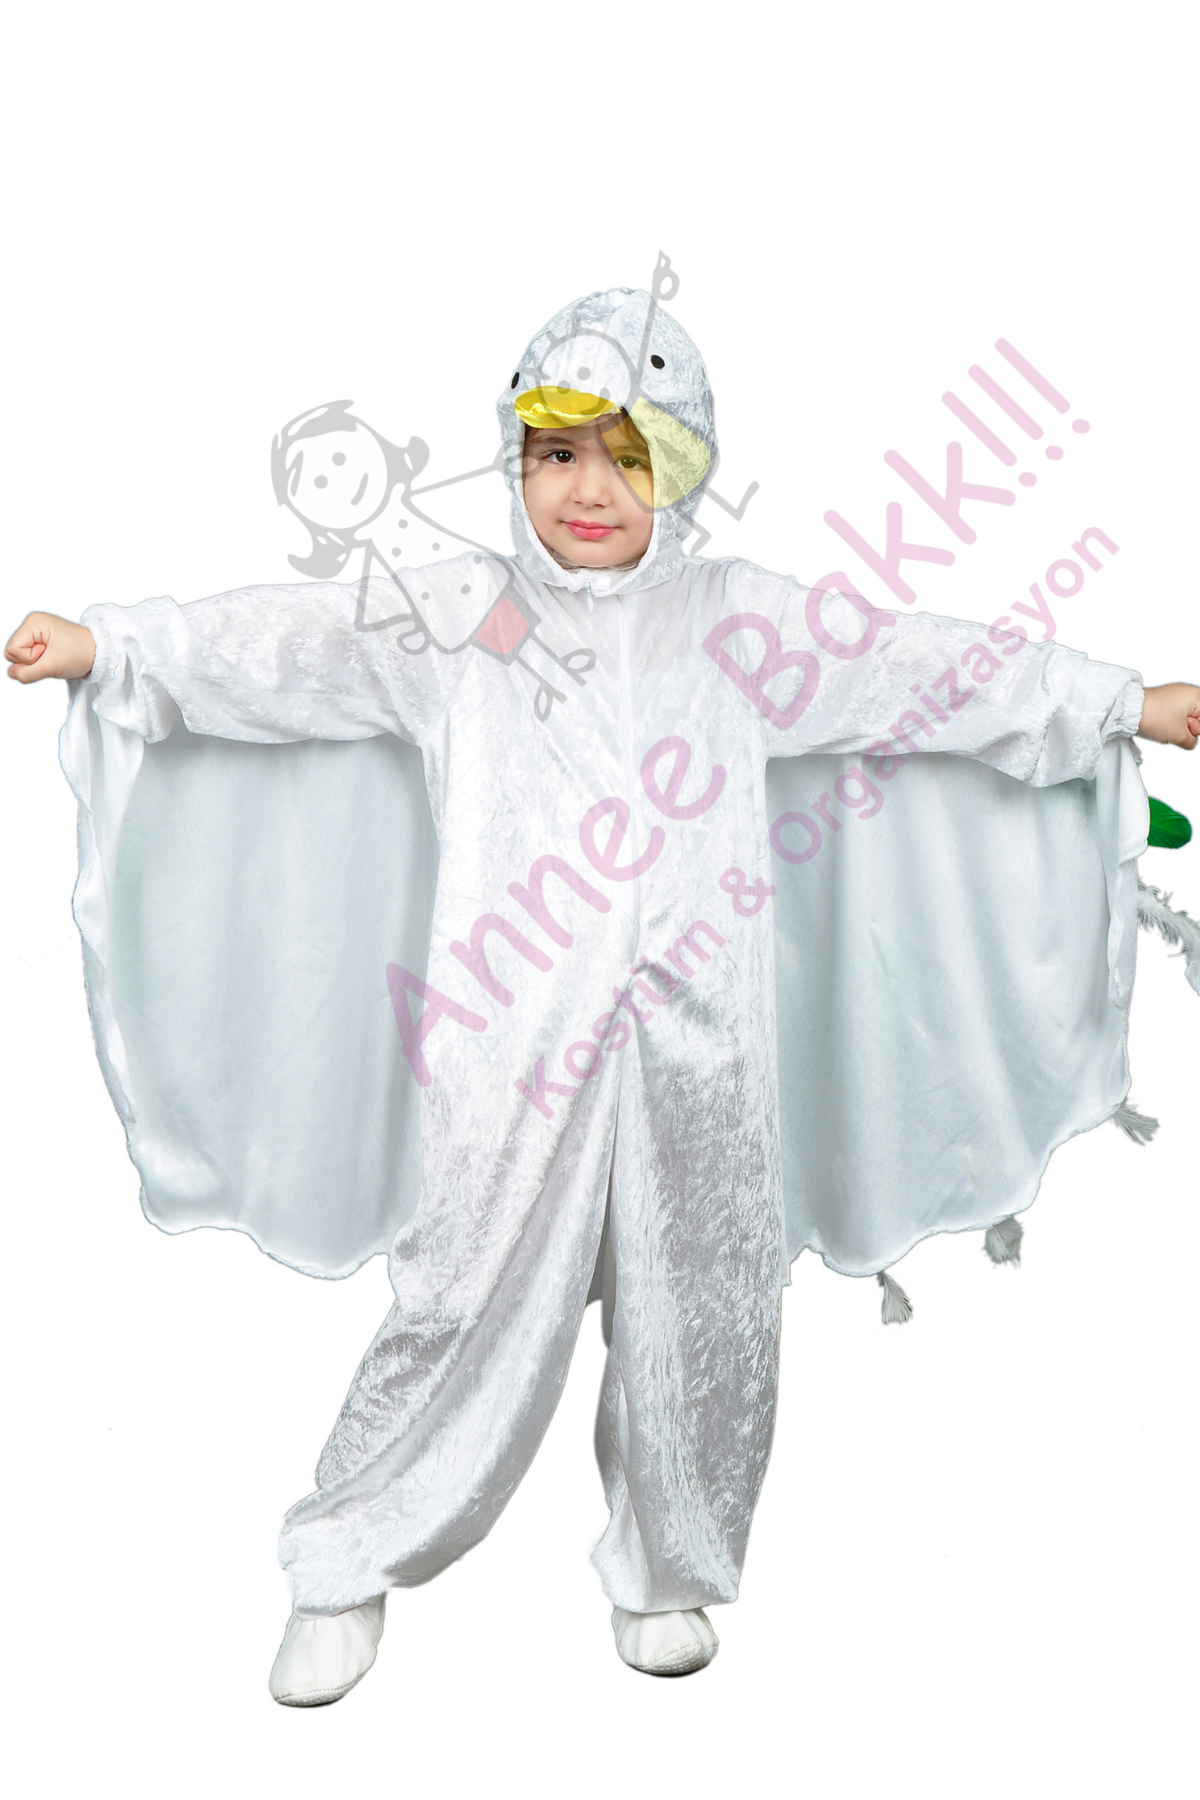 Çocuklar İçin Kuş Kostümü, Kadife Kumaş Beyaz Renk Kuş Kostümü, Hızlı Kargo